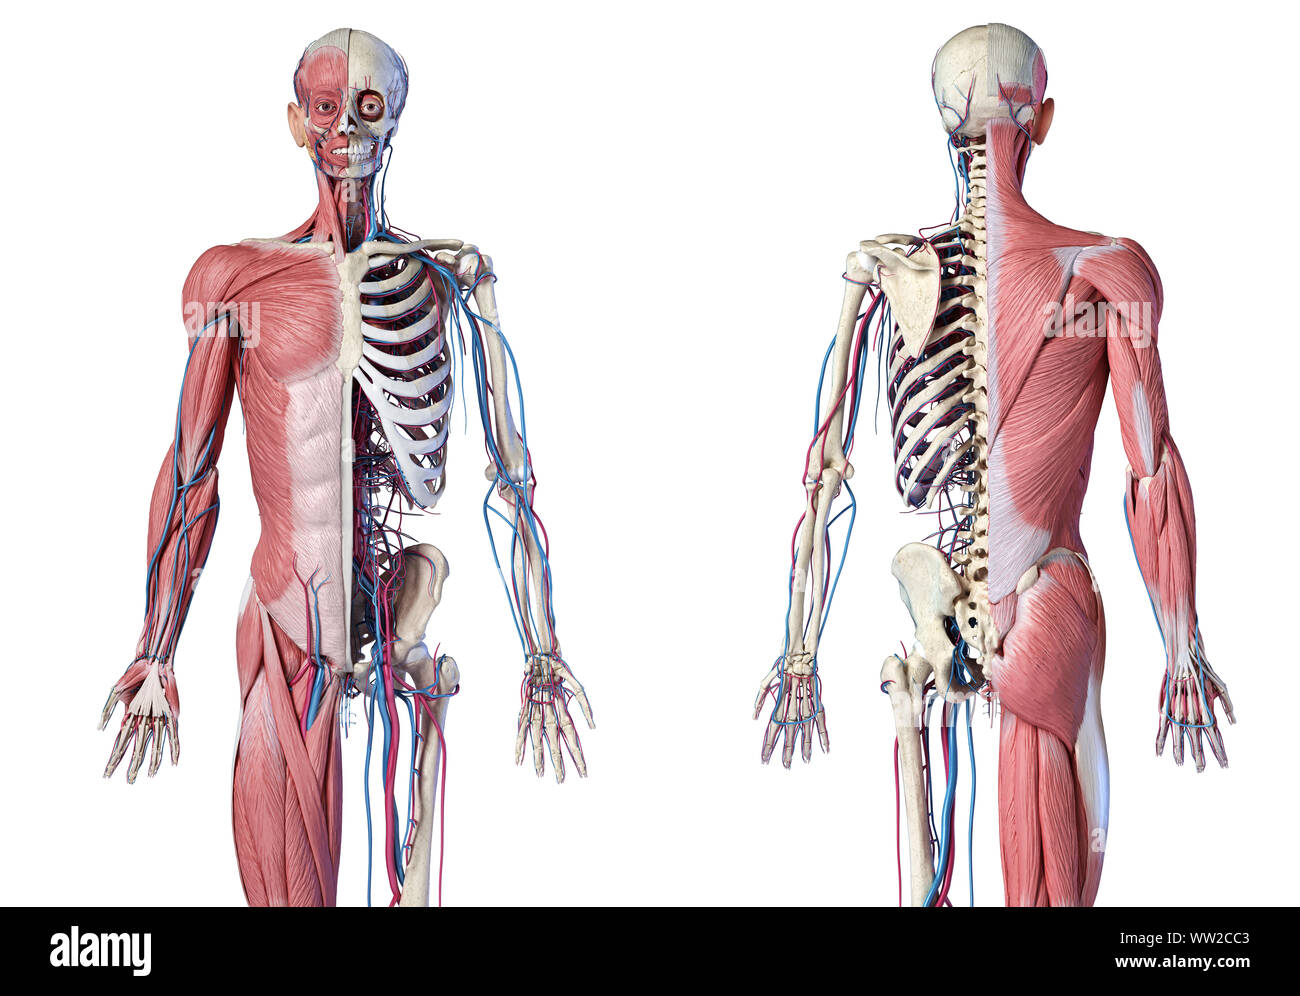 L'anatomie humaine 3/4 corps squelettique, musculaire et cardiovasculaire. Vues avant et arrière, sur fond blanc. 3d illustration Banque D'Images